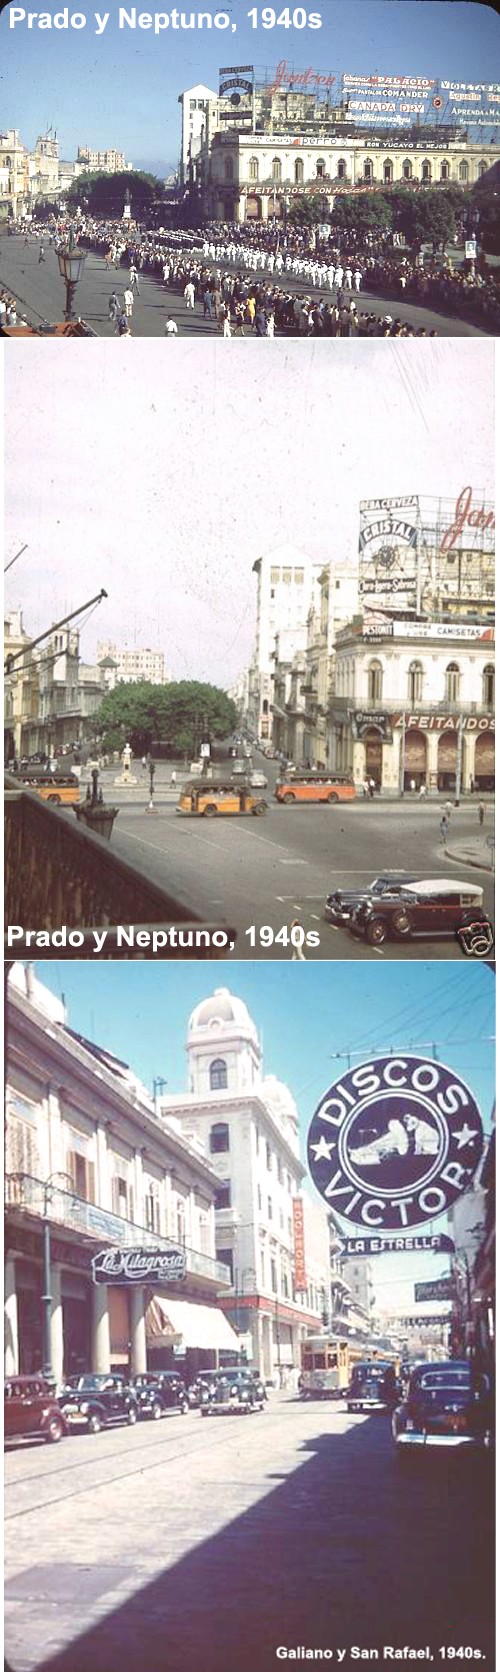 FOTOS DE CUBA ! SOLAMENTES DE ANTES DEL 1958 !!!! - Página 26 Havana11